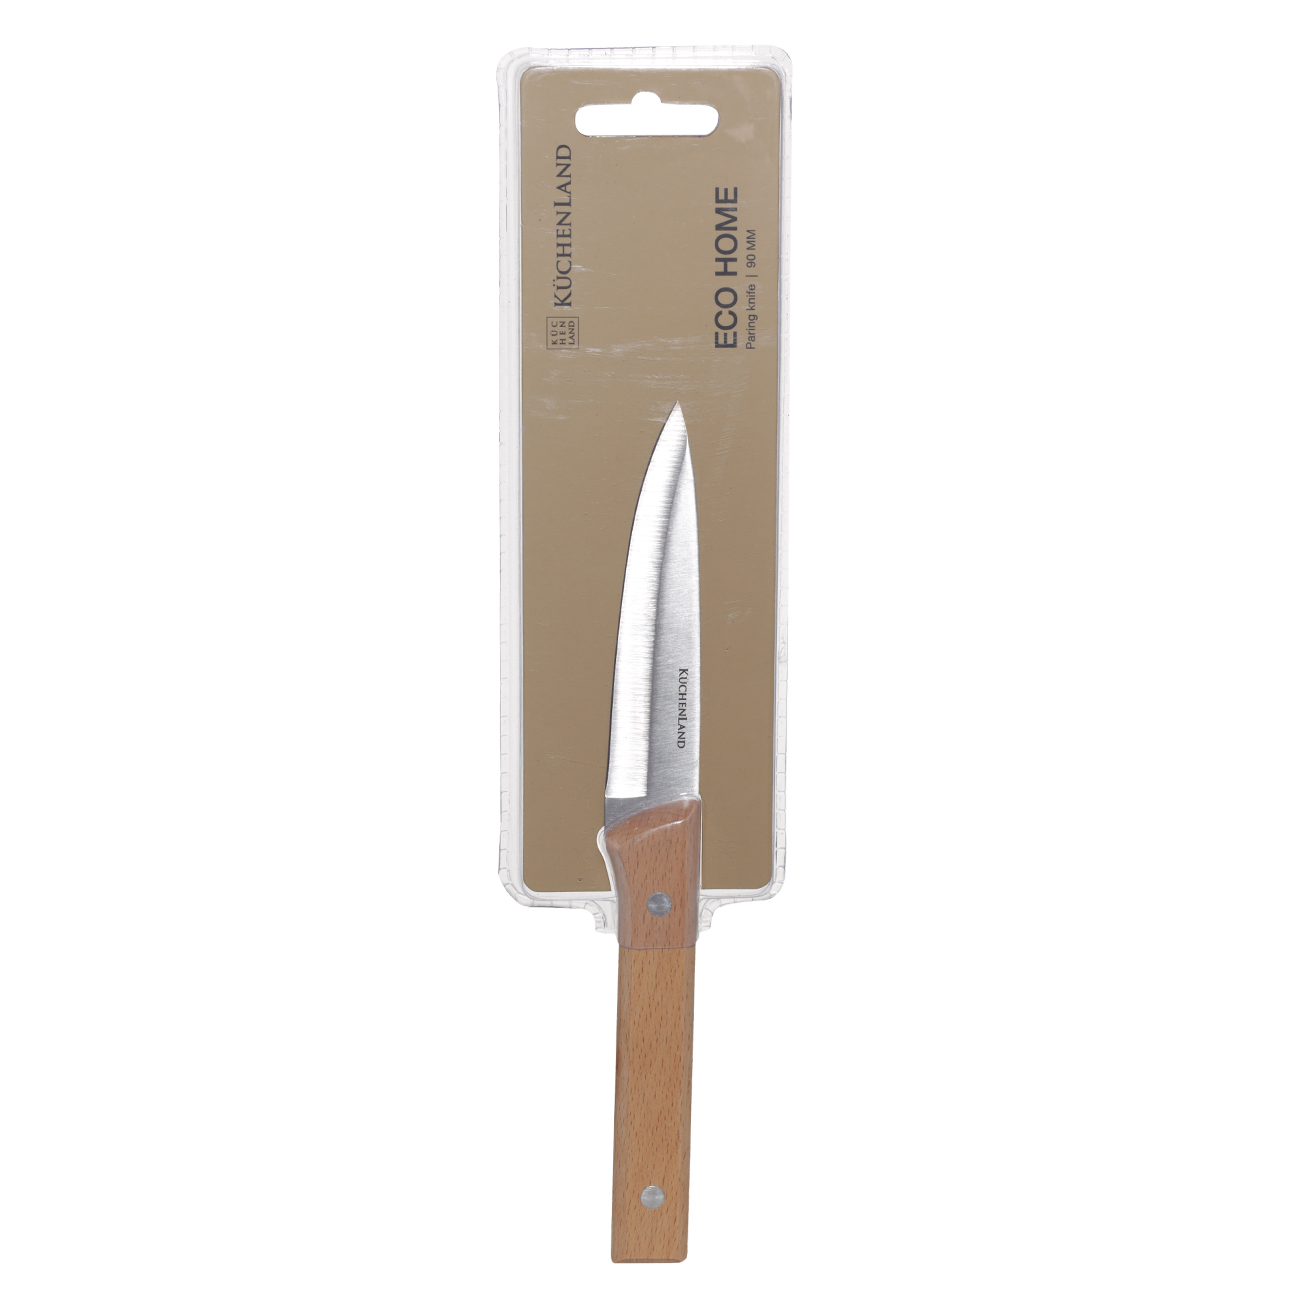 Нож для чистки овощей, 9 см, сталь/дерево, Eco home